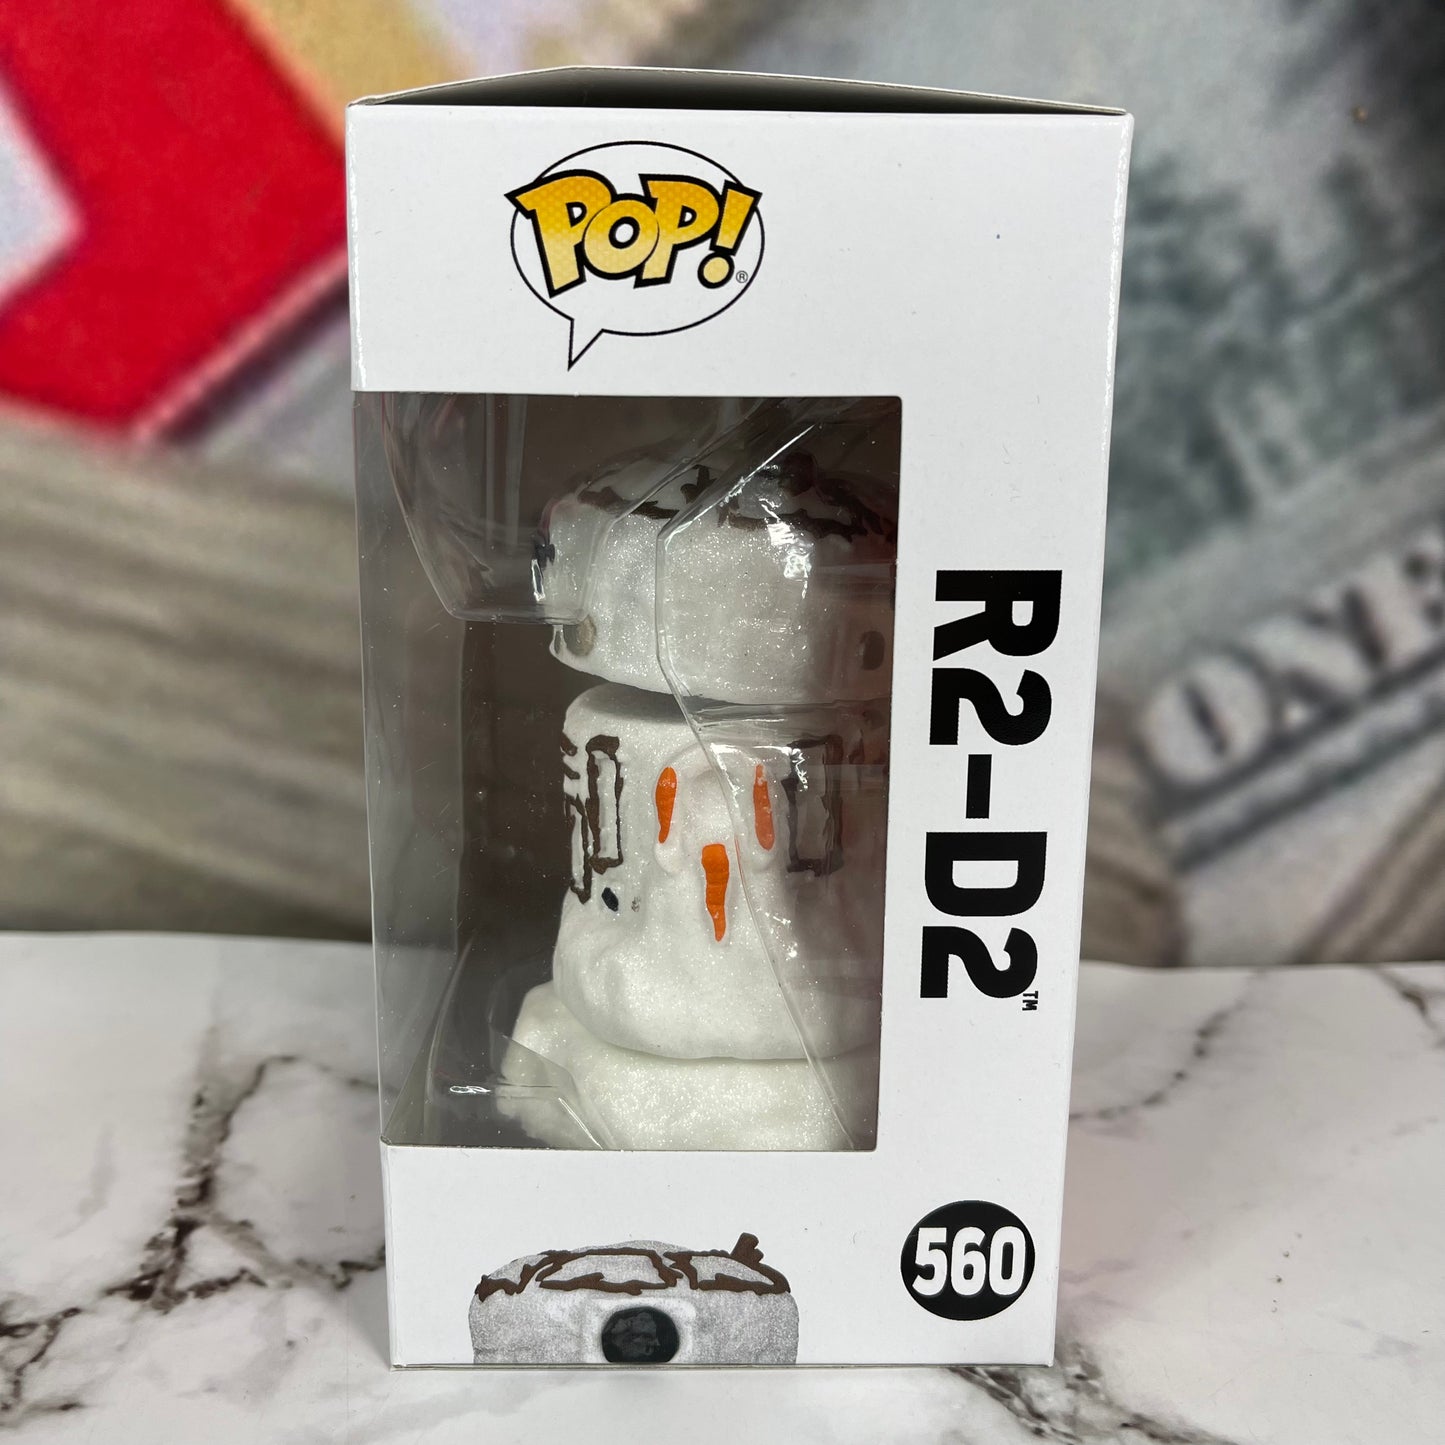 Funko Pop! Star Wars Holiday R2-D2 Snowman #560